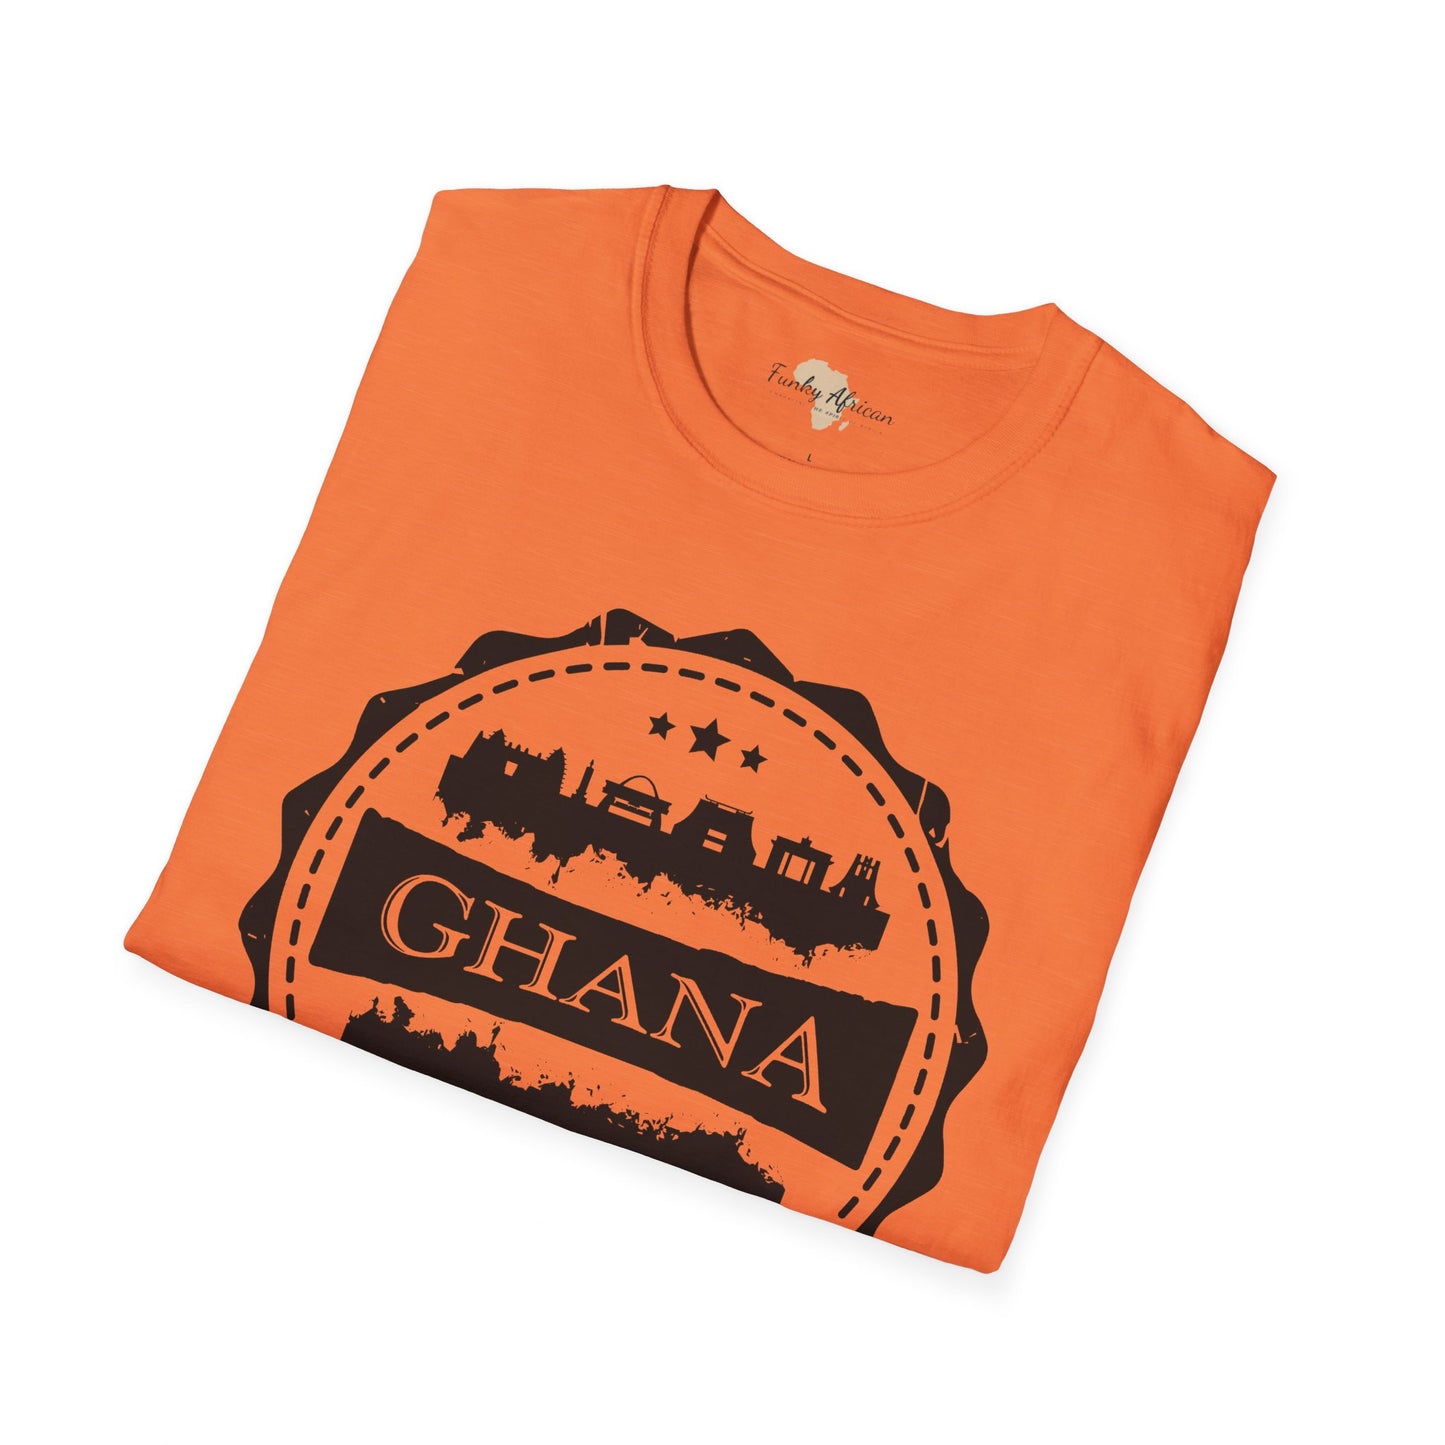 Ghana Stamp unisex tee